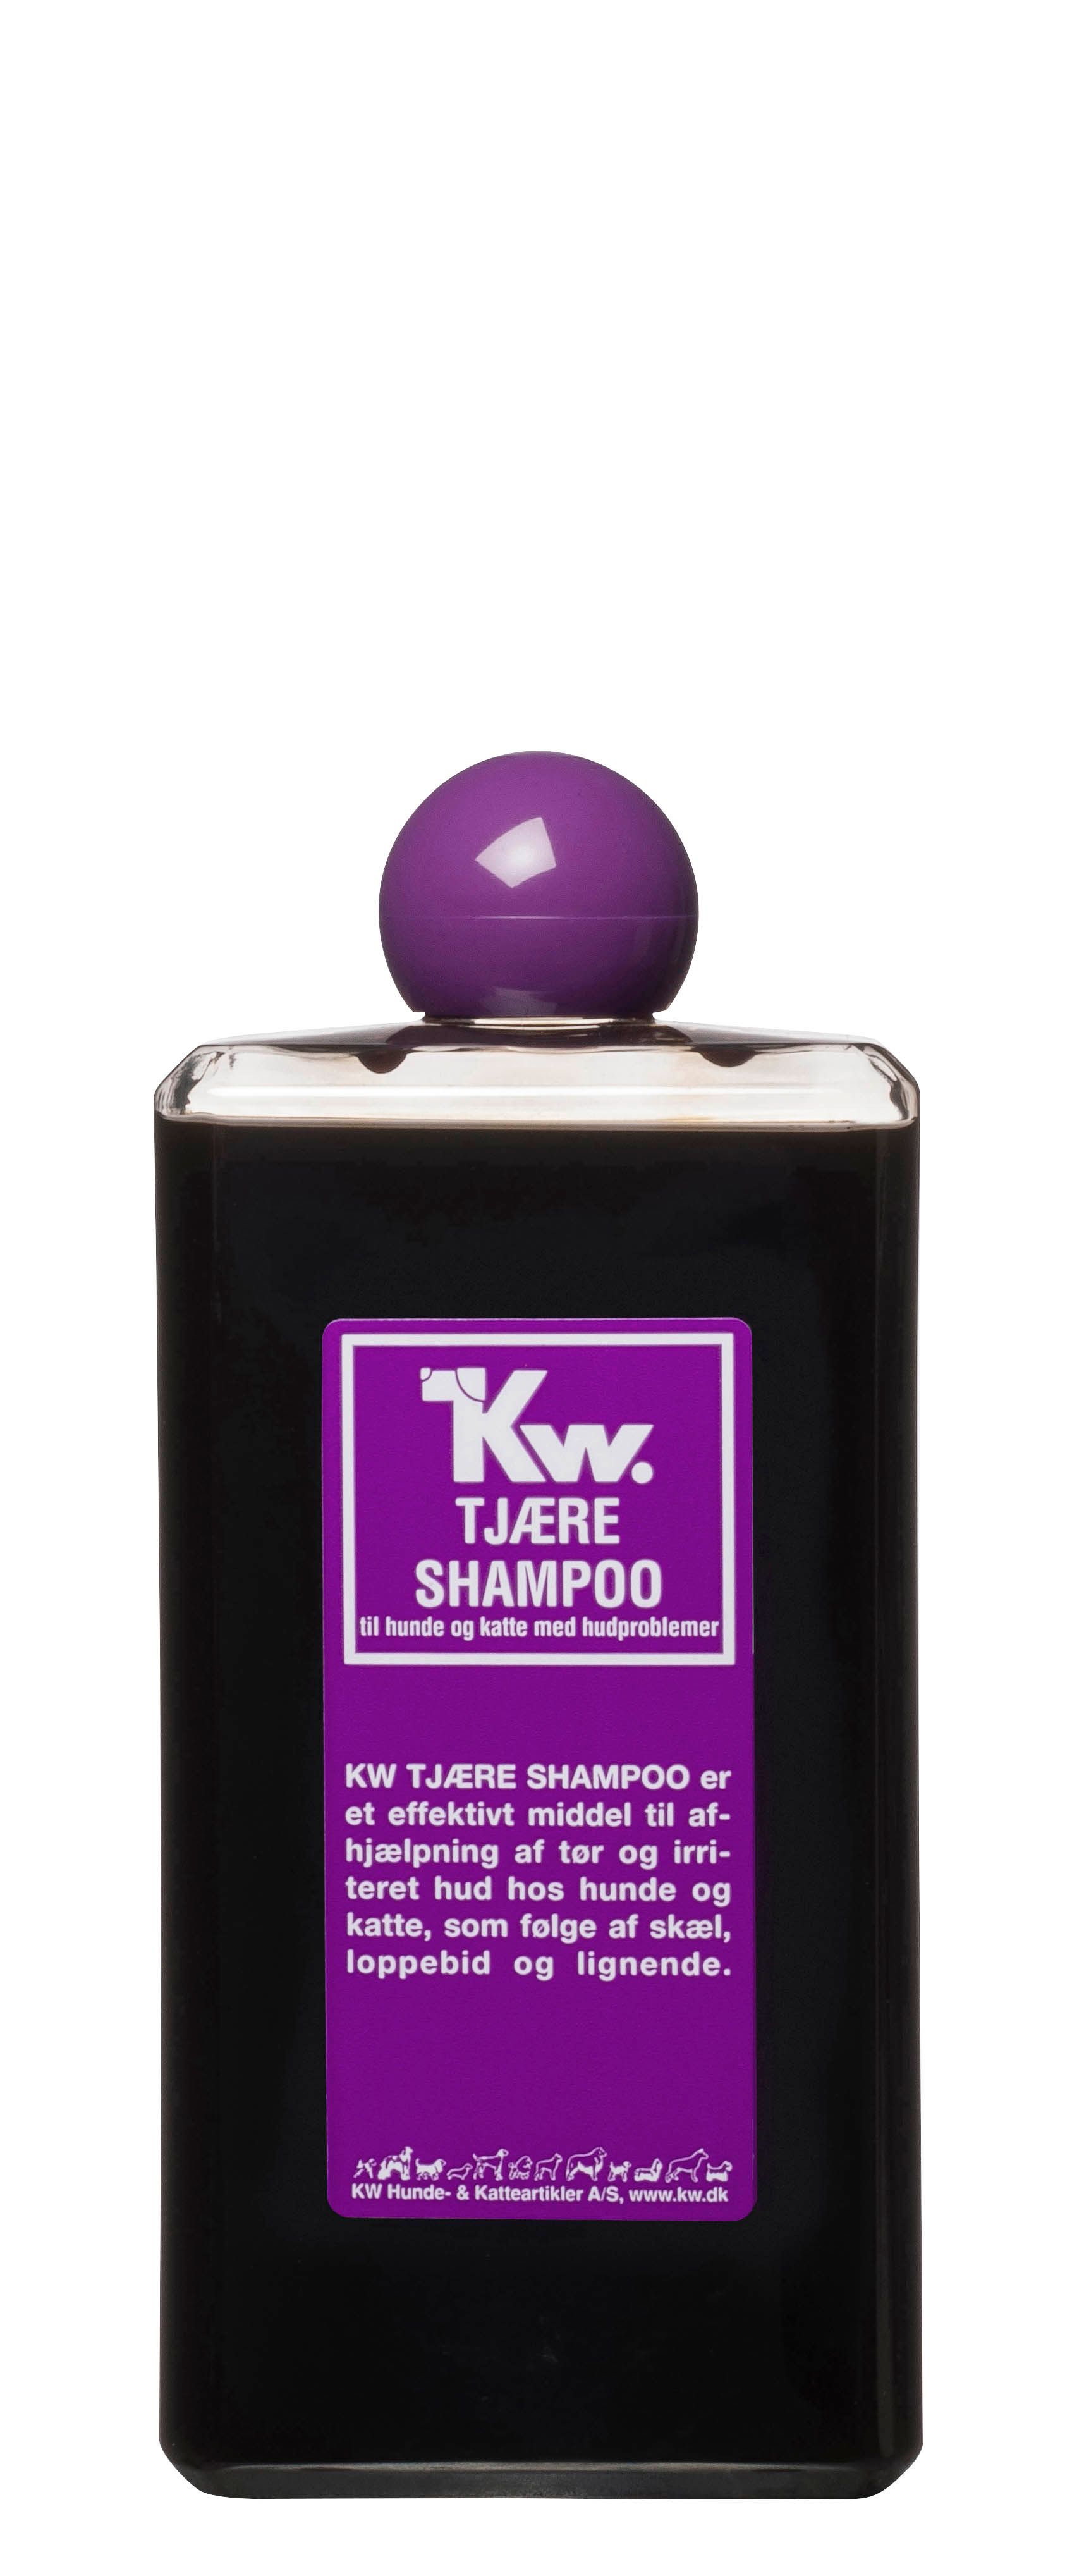 KW Tjære Shampoo effektivt afhjælpning af tør irriteret hud hos hunde og katte.